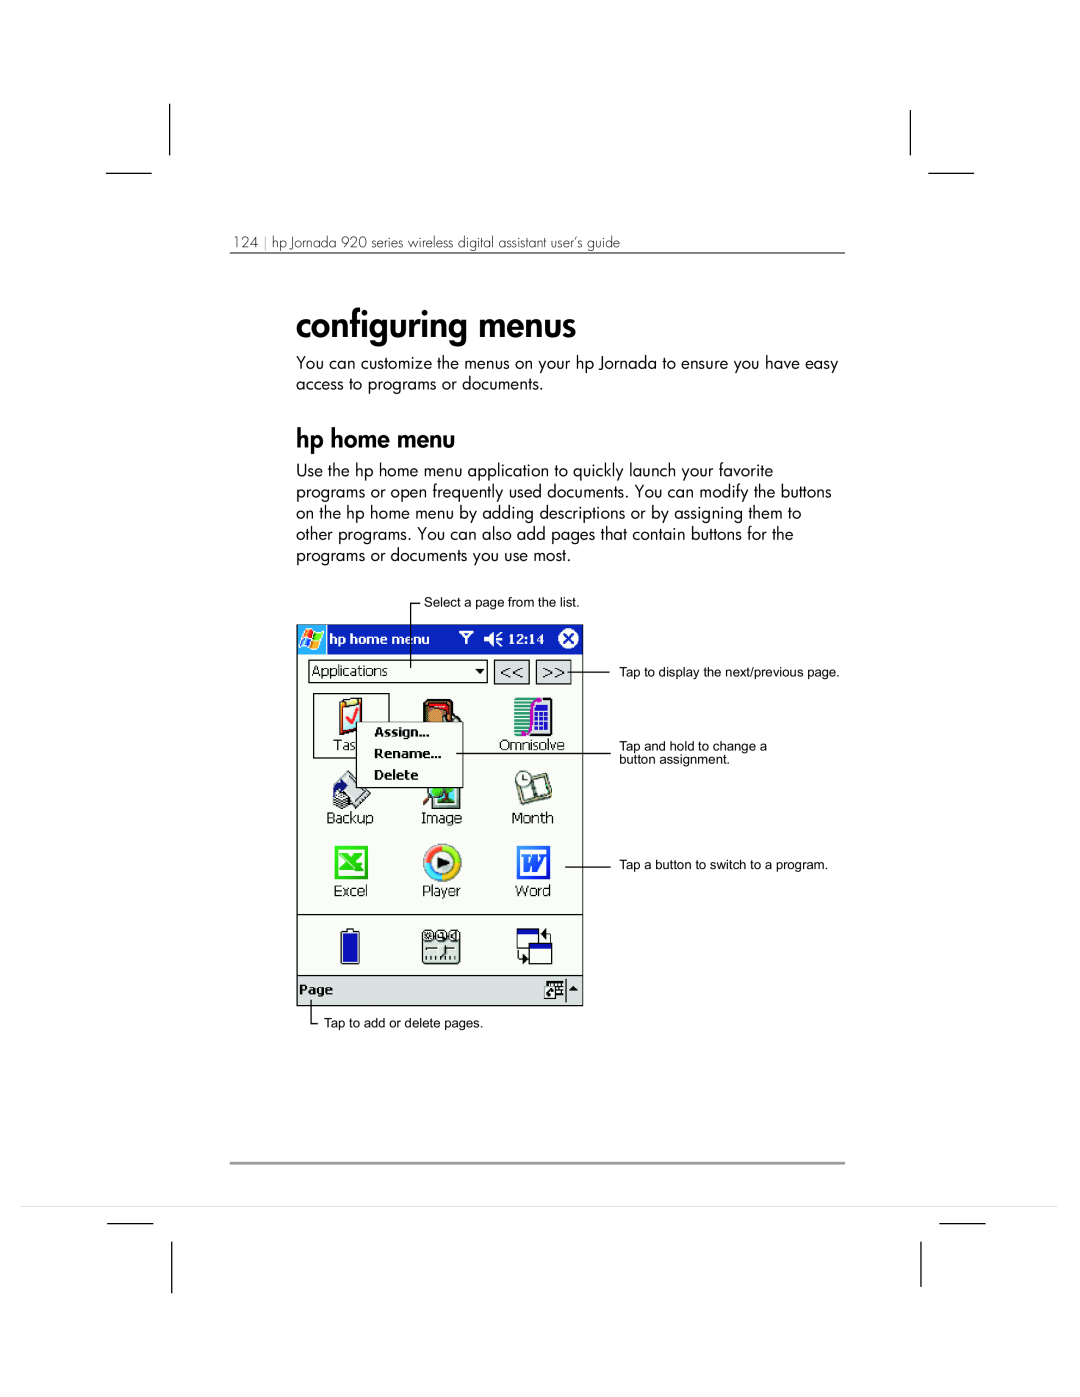 HP 920 manual configuring menus, hp home menu 